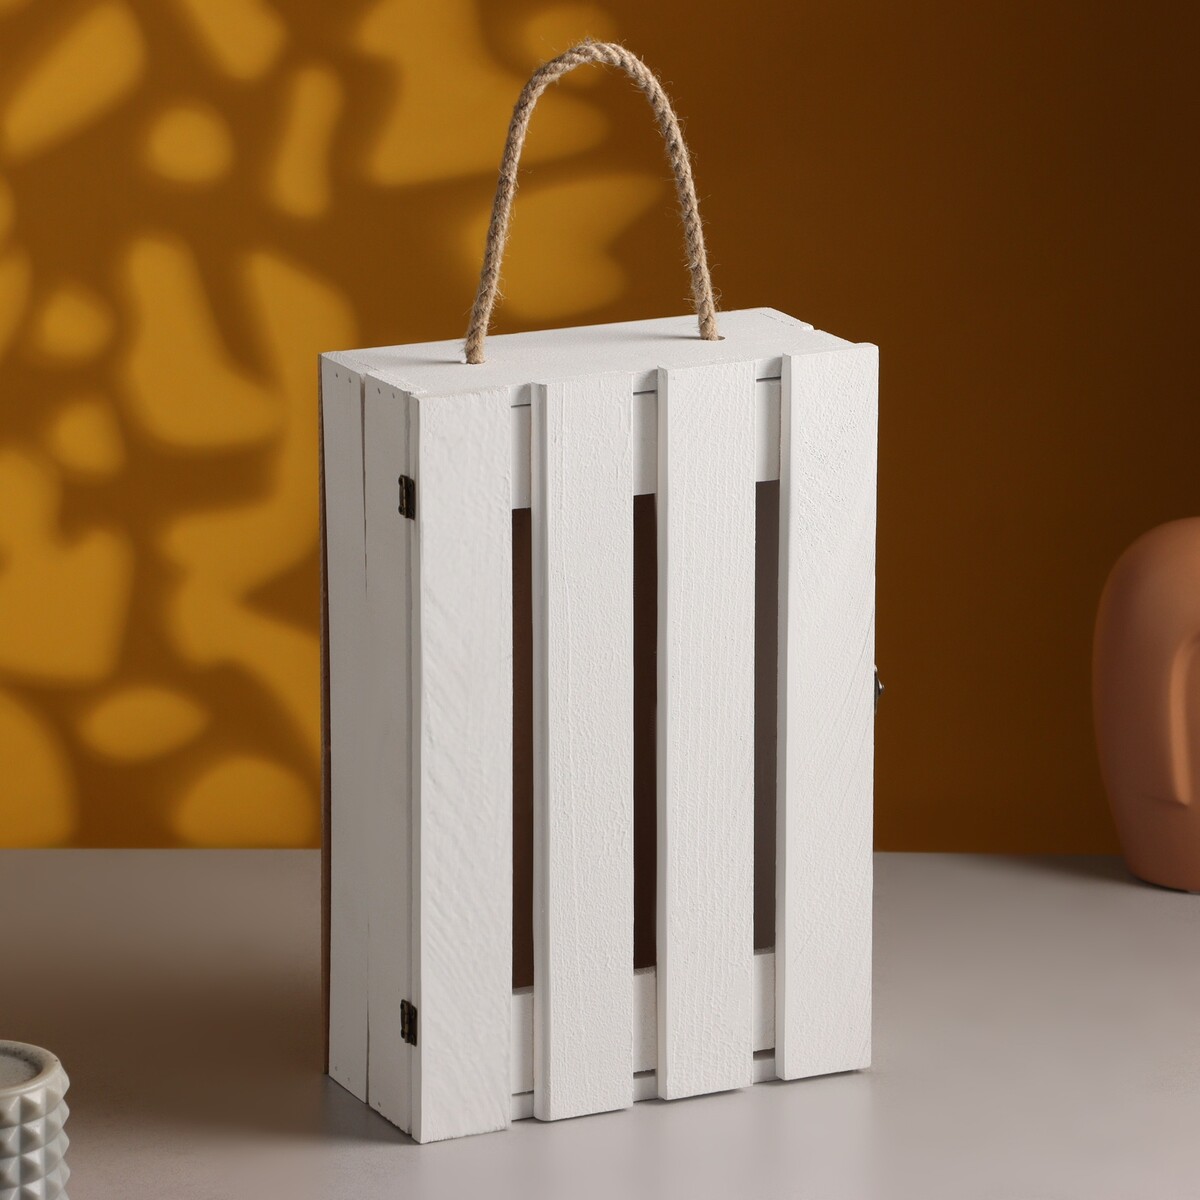 Подарочный ящик 30×20×10 см деревянный с откидной крышкой, с замком, ручка, белый полимербыт ящик артлайн с крышкой 30 л